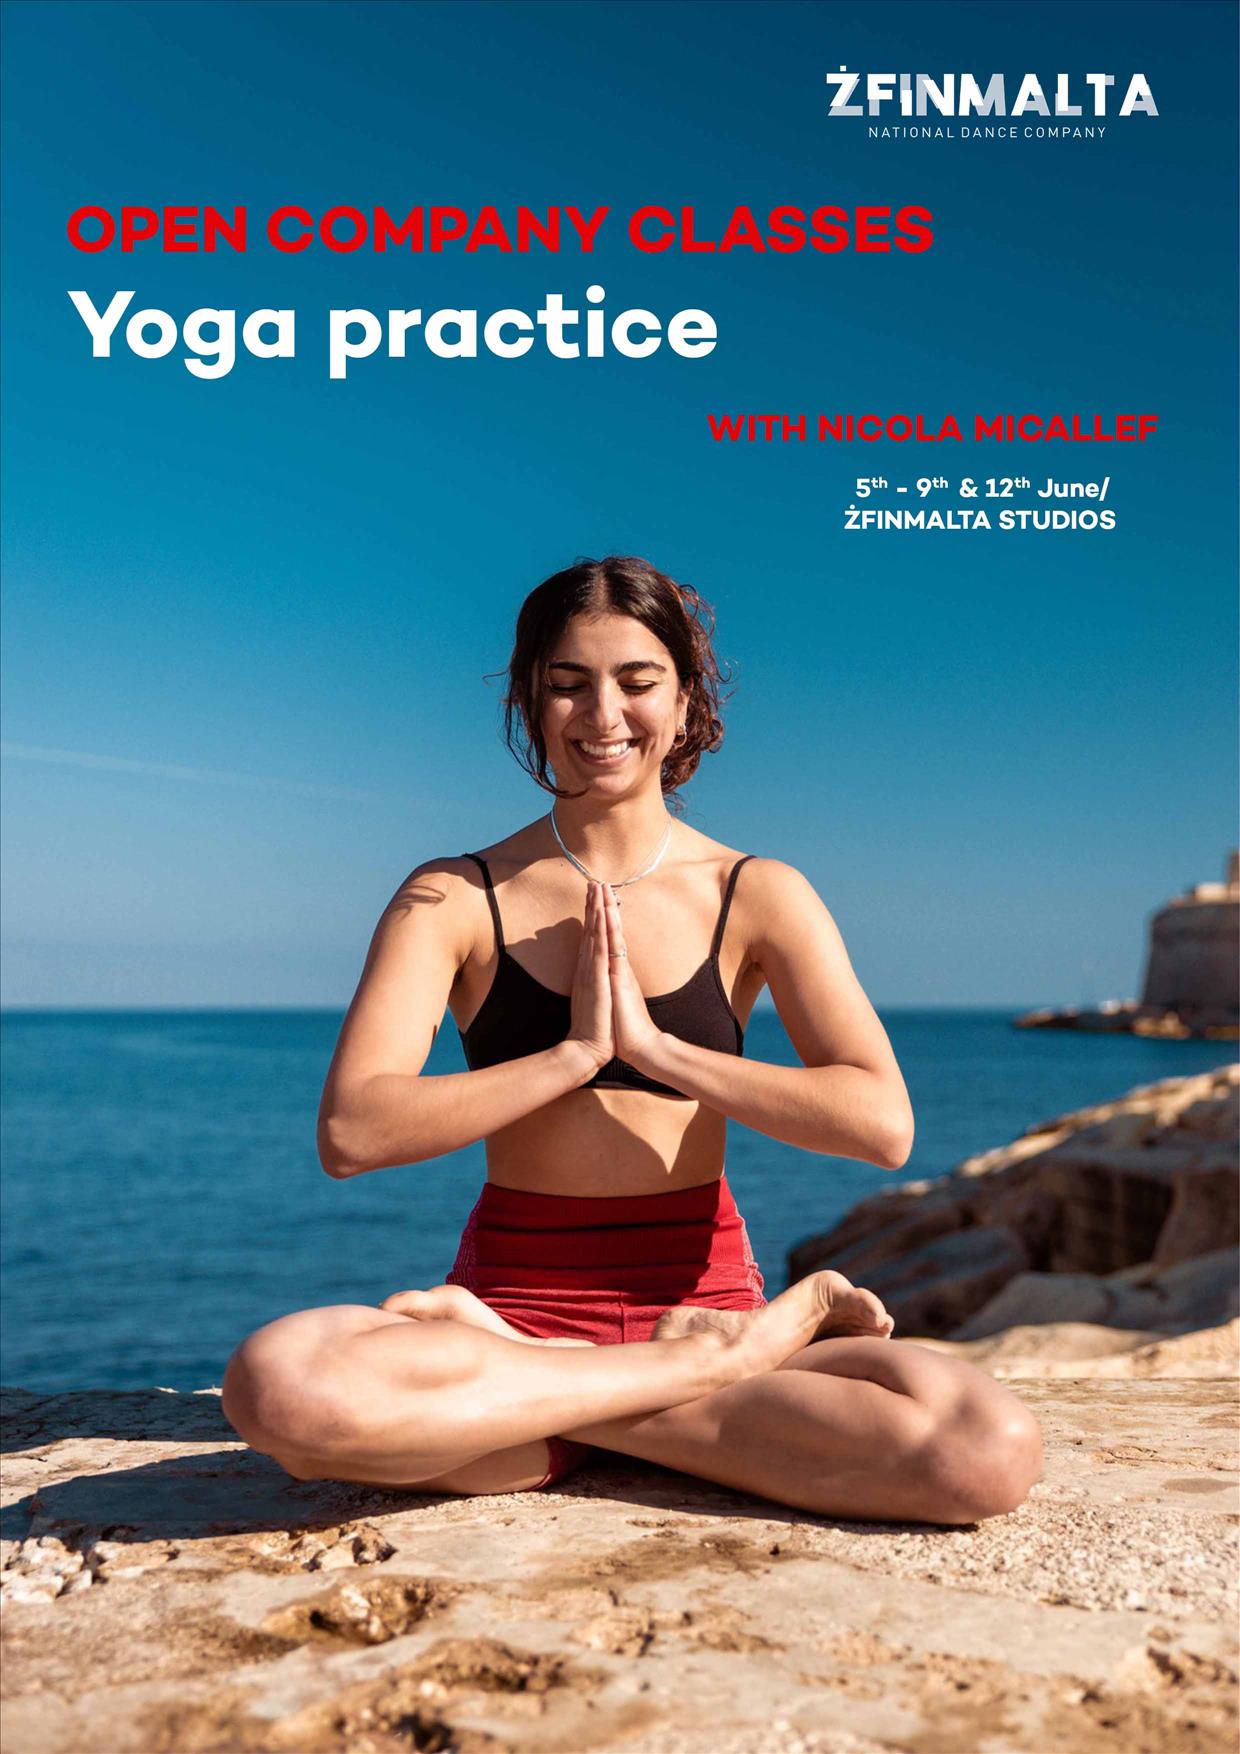 ŻfinMalta's Yoga open company classes poster